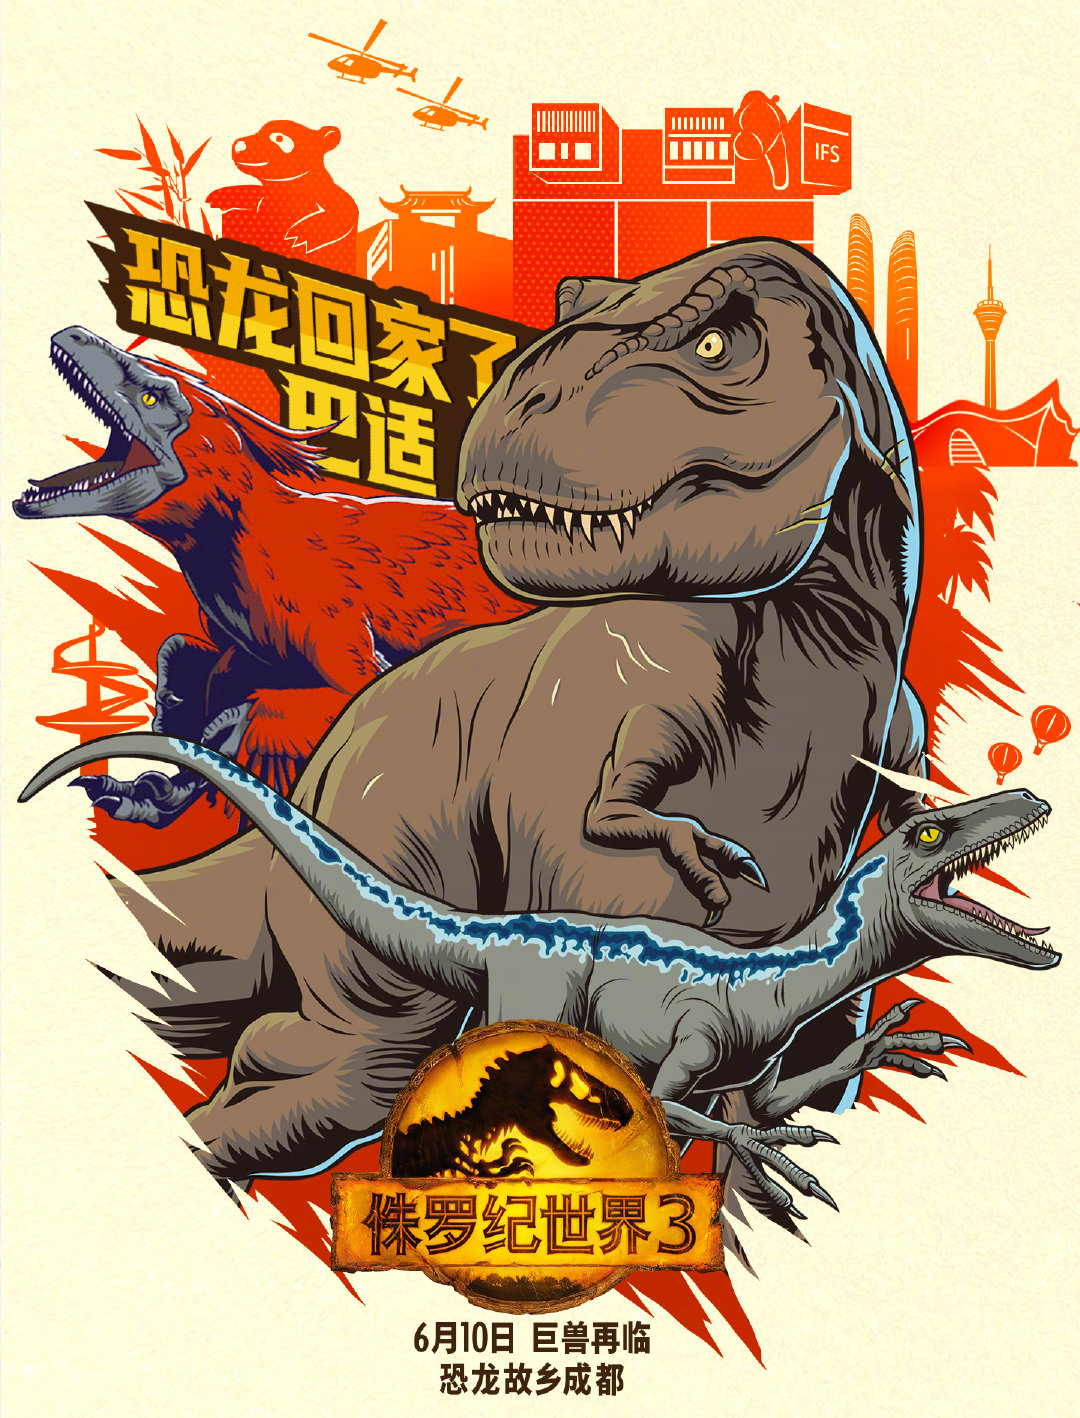 "帕帕"教你如何躲避恐龙追击 《侏罗纪世界3》曝方言版海报(图1)